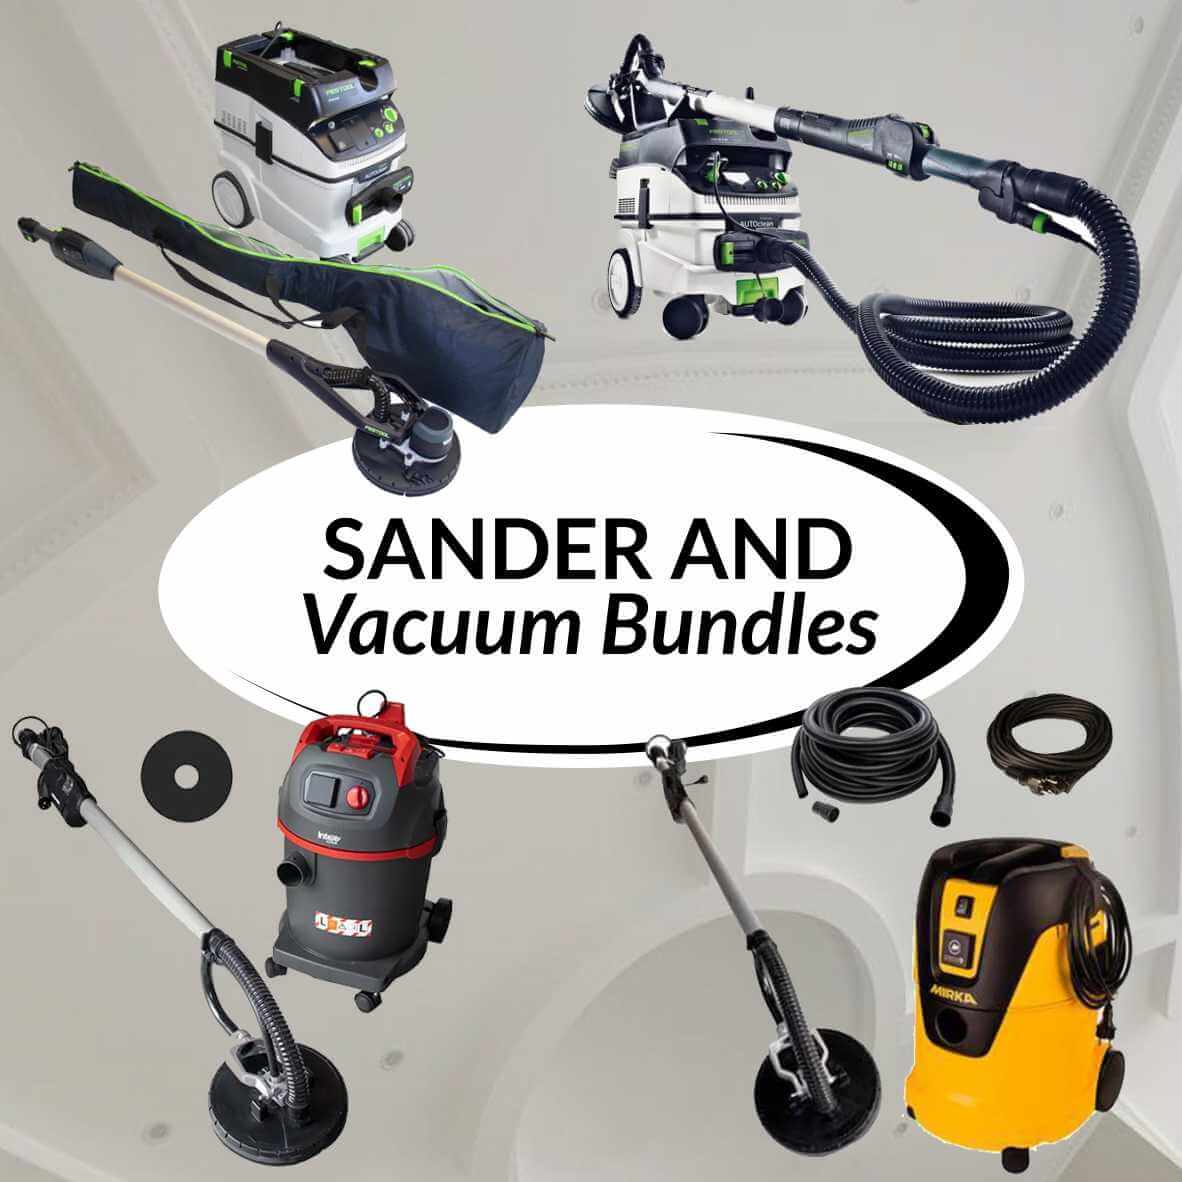 Sander and Vacuum Bundles